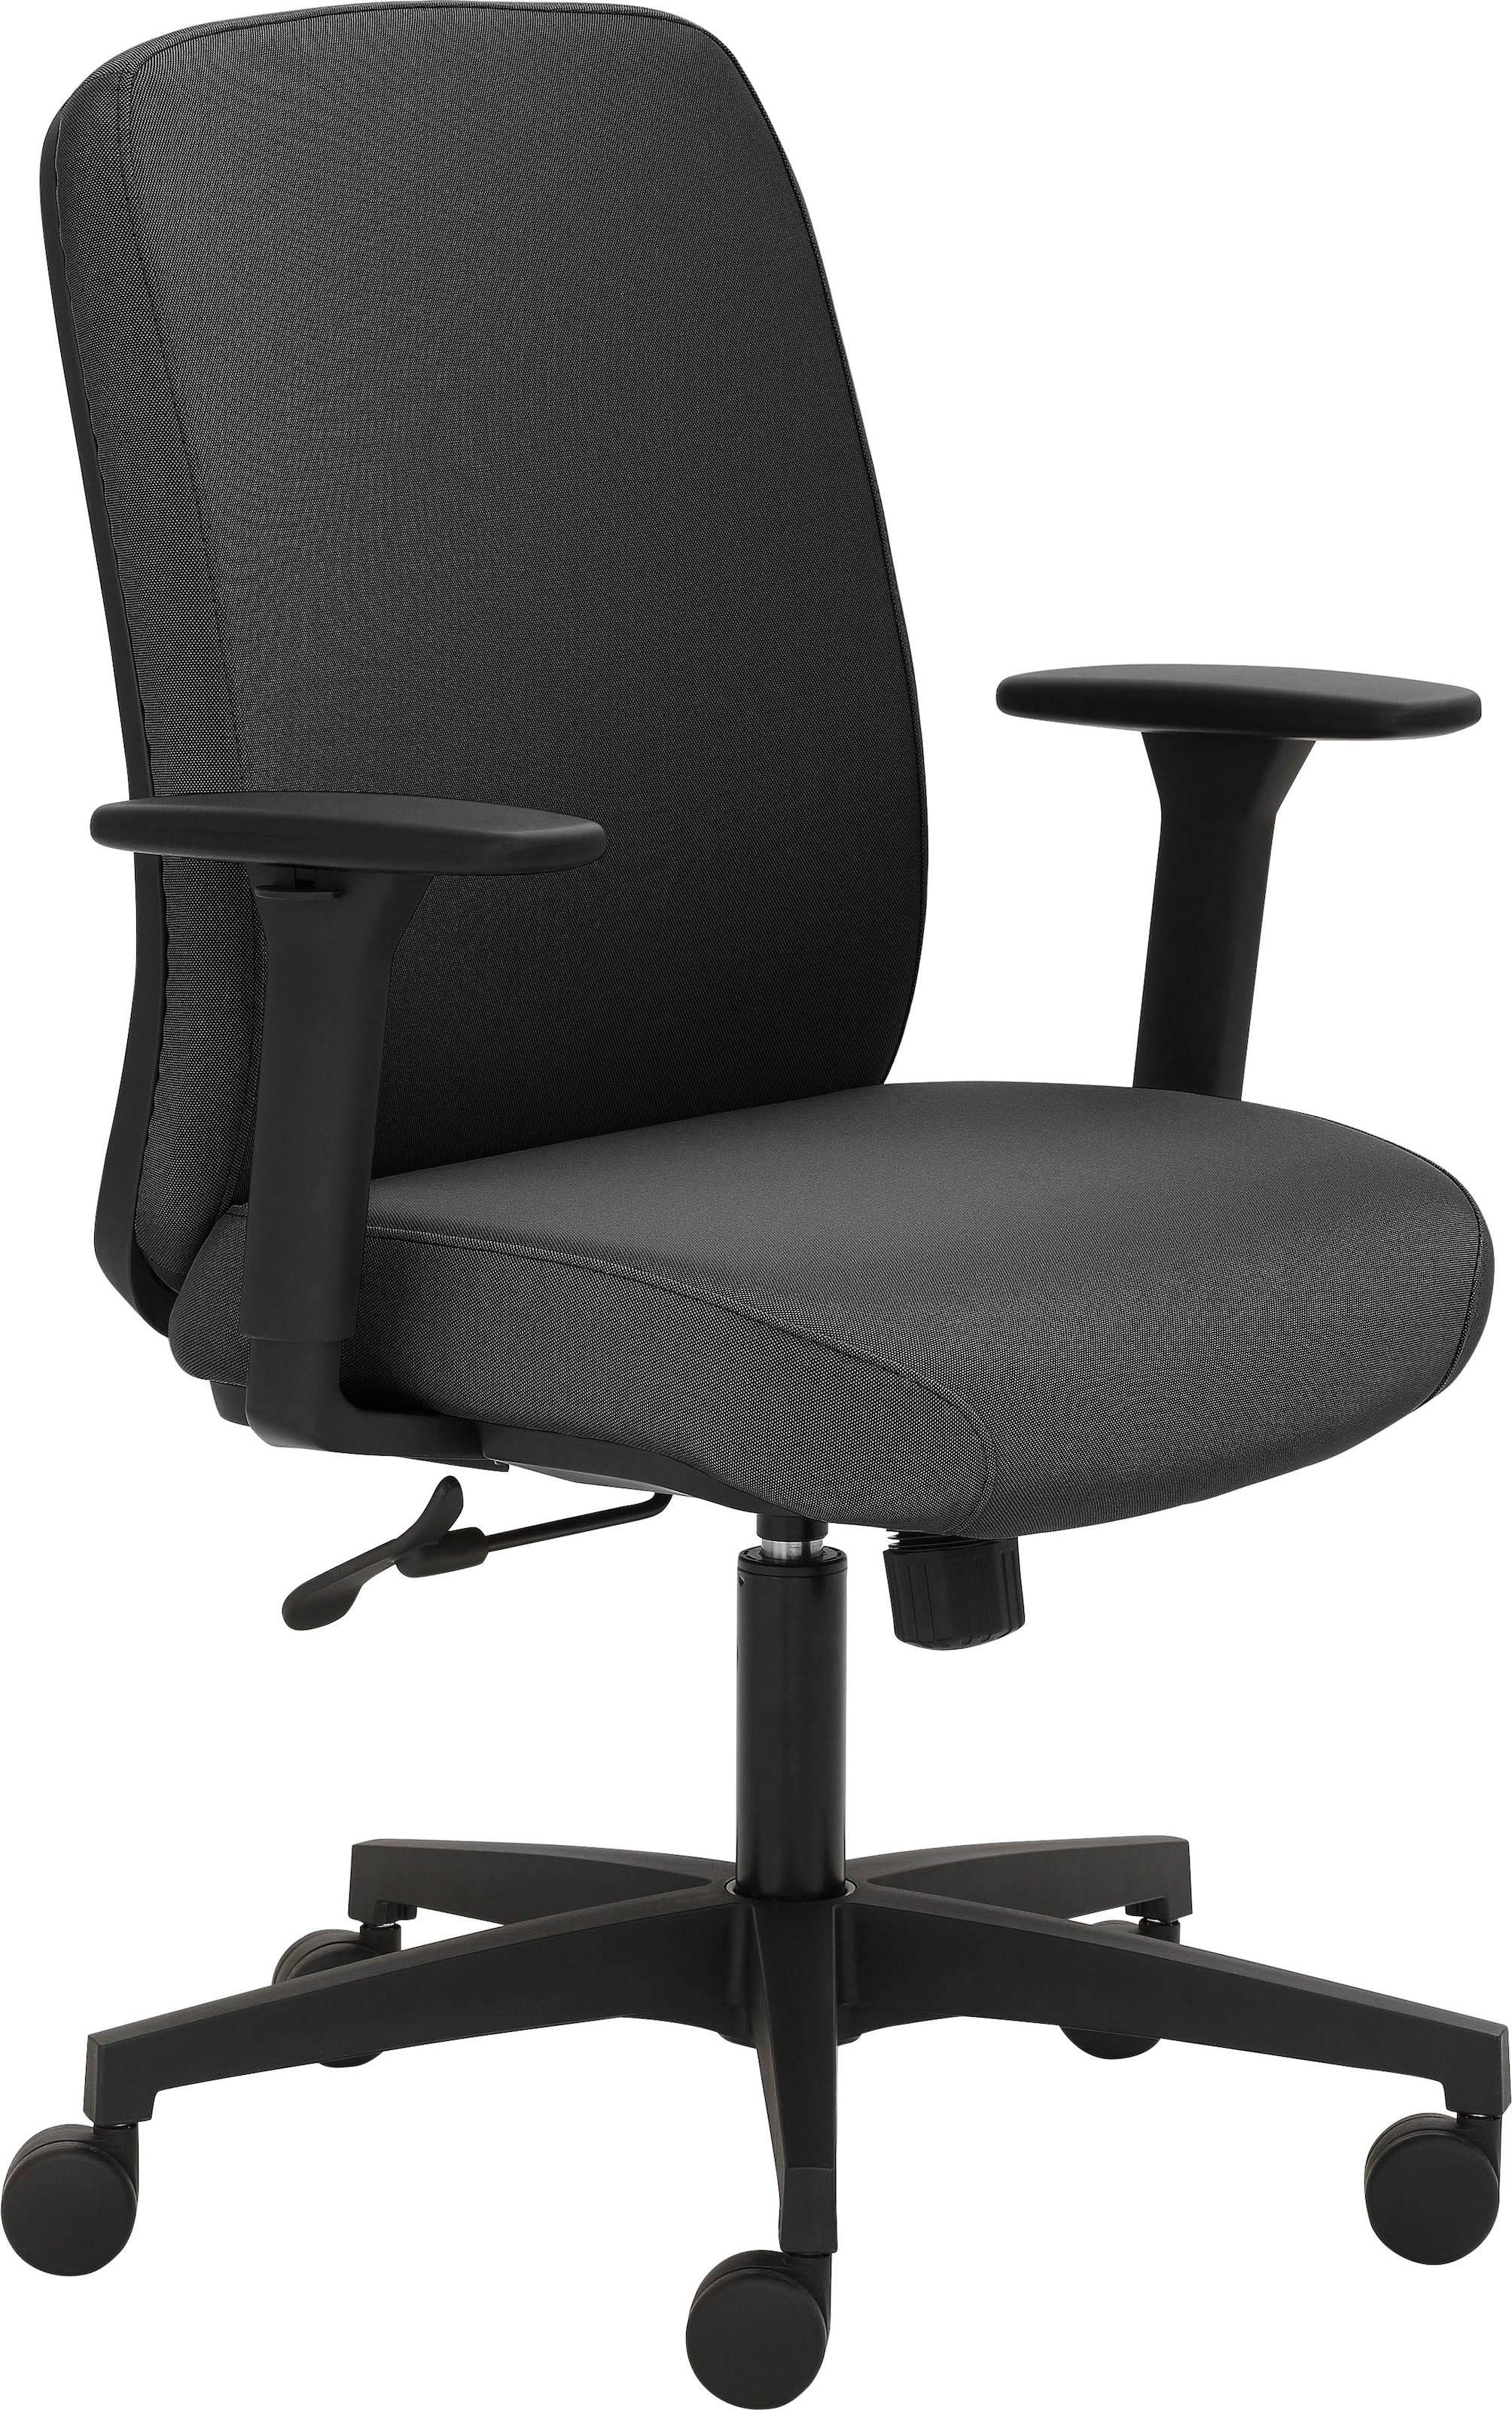 »2219«, maximalen Struktur extra (recyceltes kaufen BAUR für Polyester), Drehstuhl Polsterung Sitzmöbel | Sitzkomfort GS-zertifiziert, starke Mayer